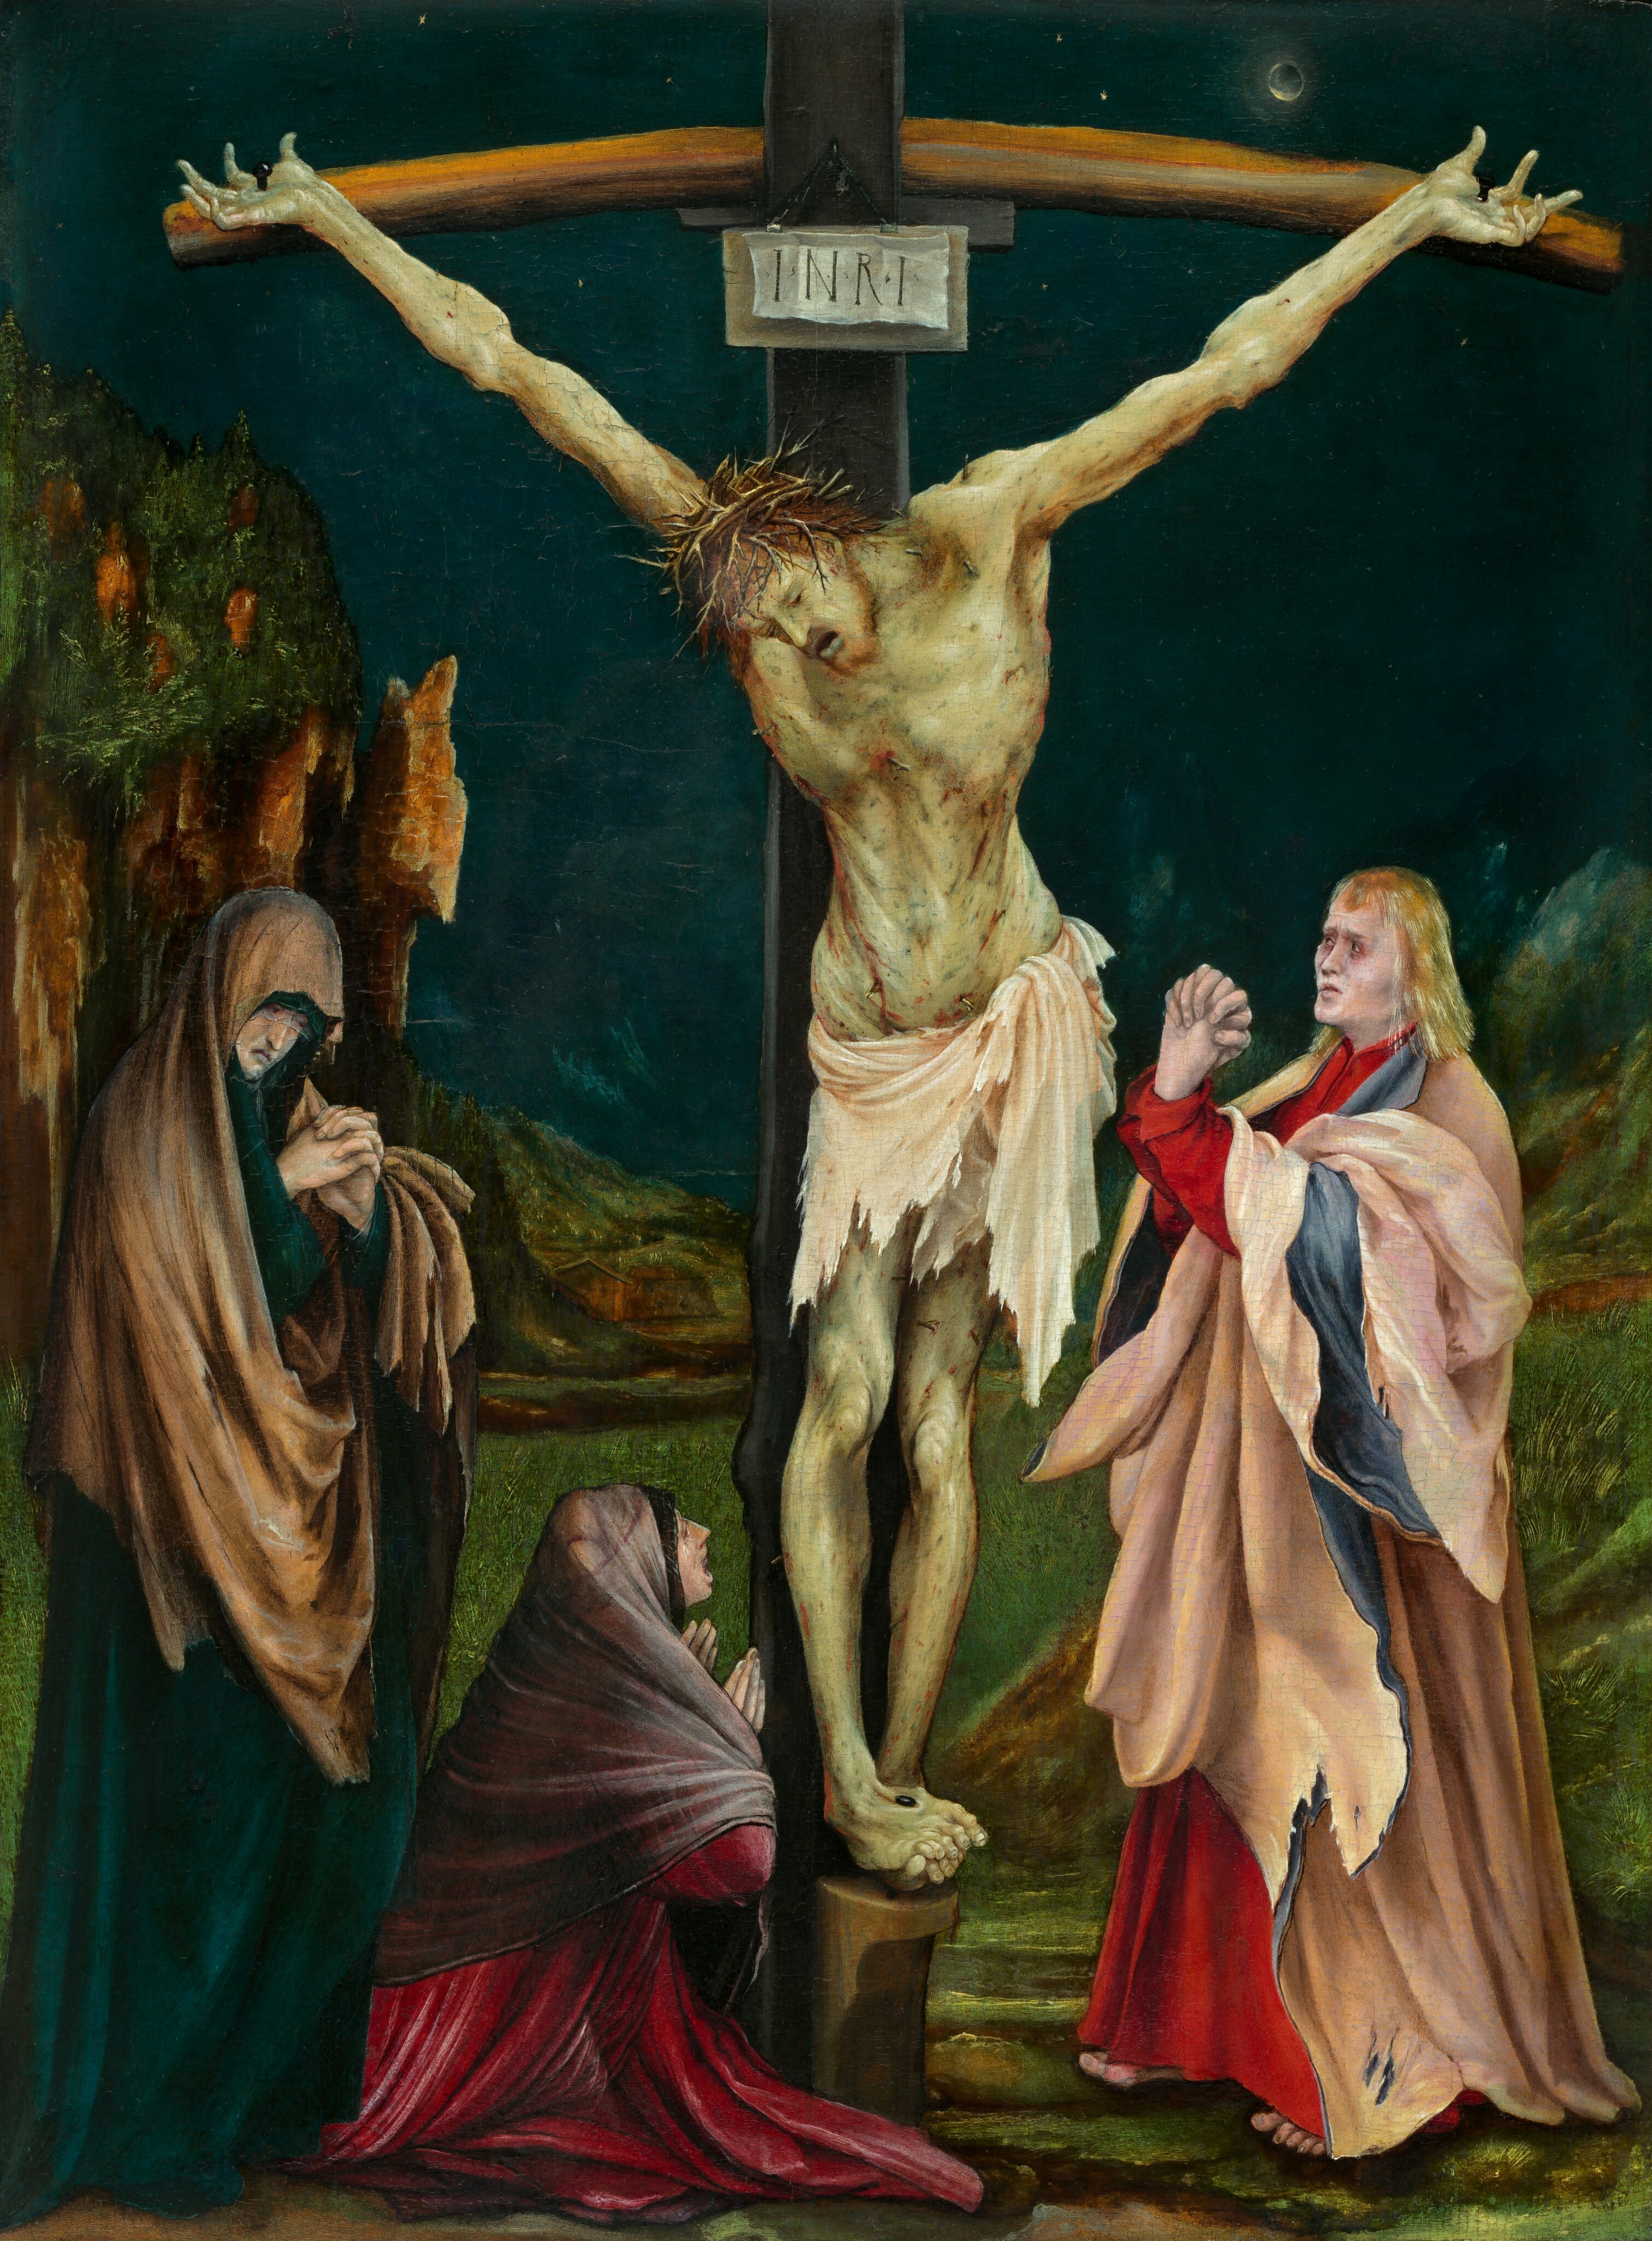 jesus 1999 crucifixion